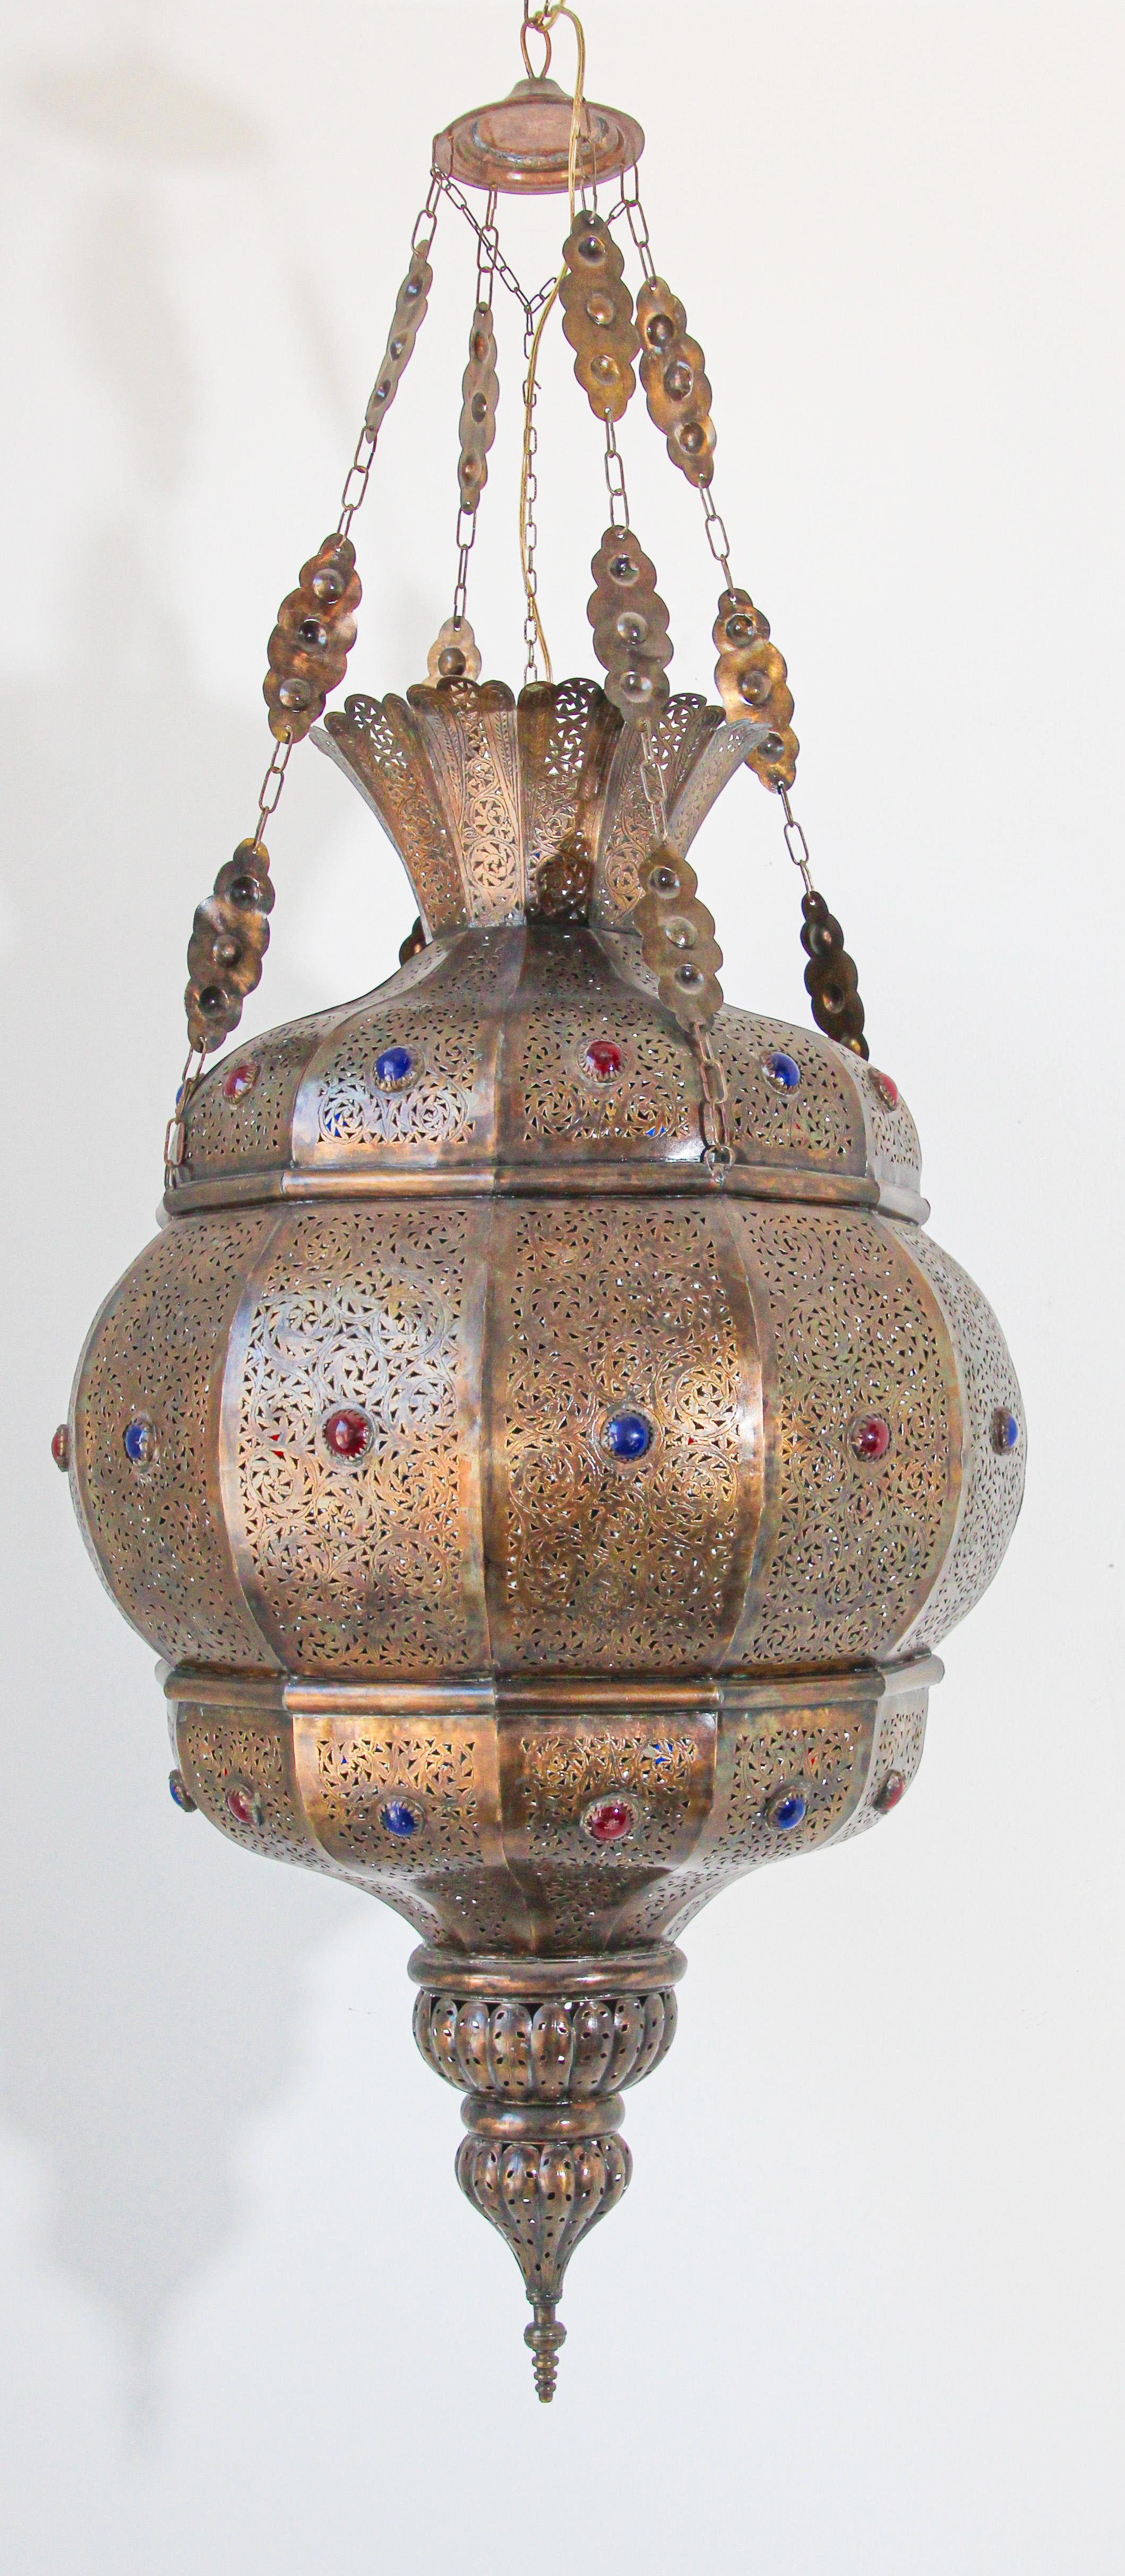 Eleganter marokkanischer Granada-Kronleuchter im maurischen Stil aus Messing mit farbigen Glaseinsätzen.
Handgefertigt in Marokko mit sehr feinem, filigranem, durchbrochenem Messingdesign und Intarsien aus farbigem, mit Edelsteinen besetztem